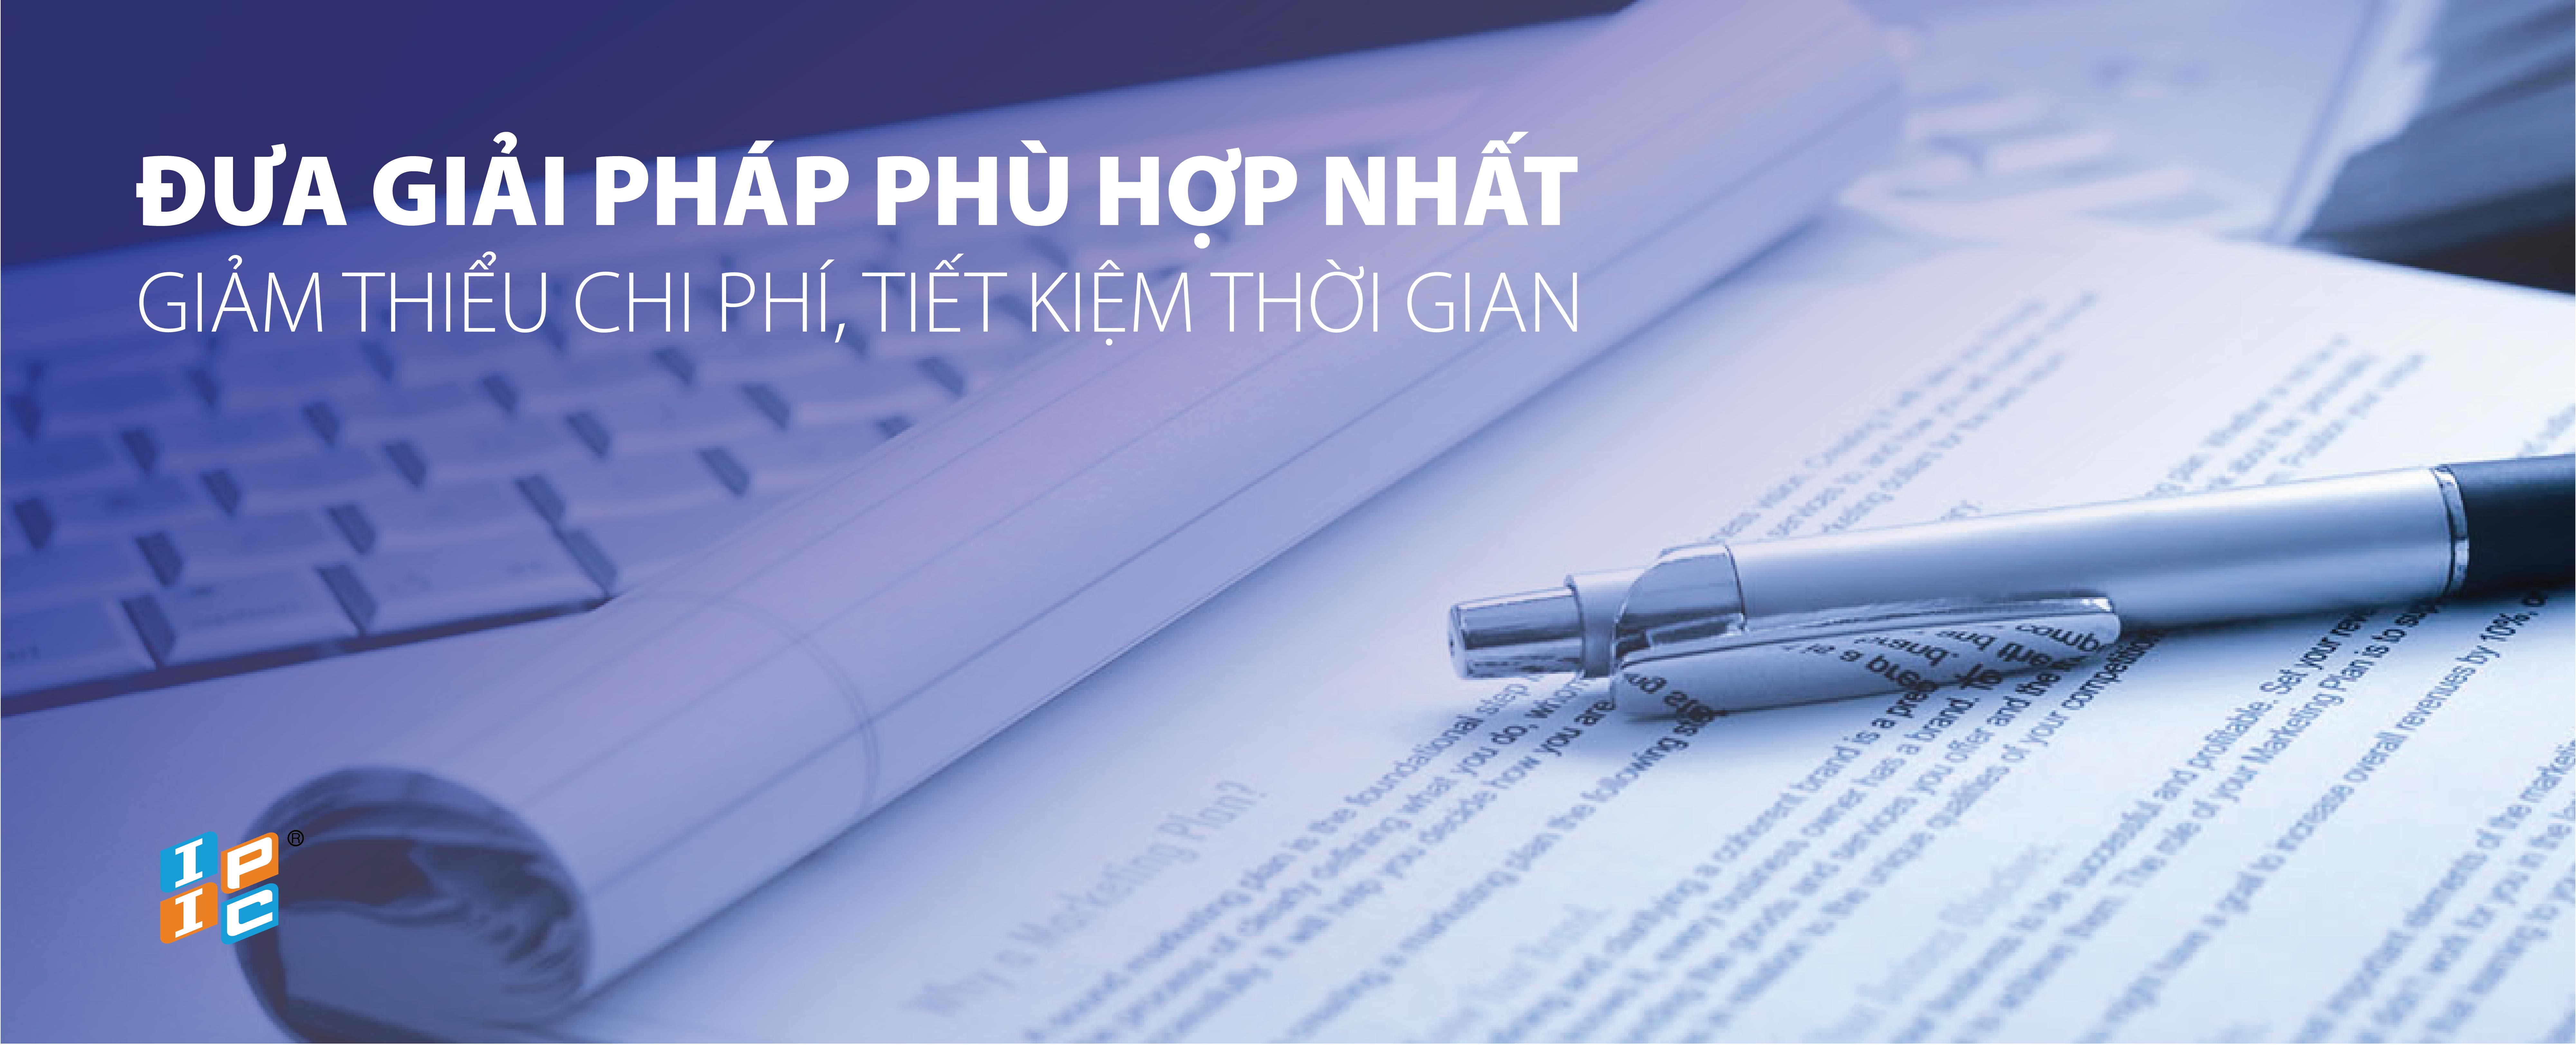 Tư vấn về hoạt động cho thuê lại lao động. Điều kiện cấp Giấy phép hoạt động cho thuê lại lao động đối với doanh nghiệp Việt Nam.